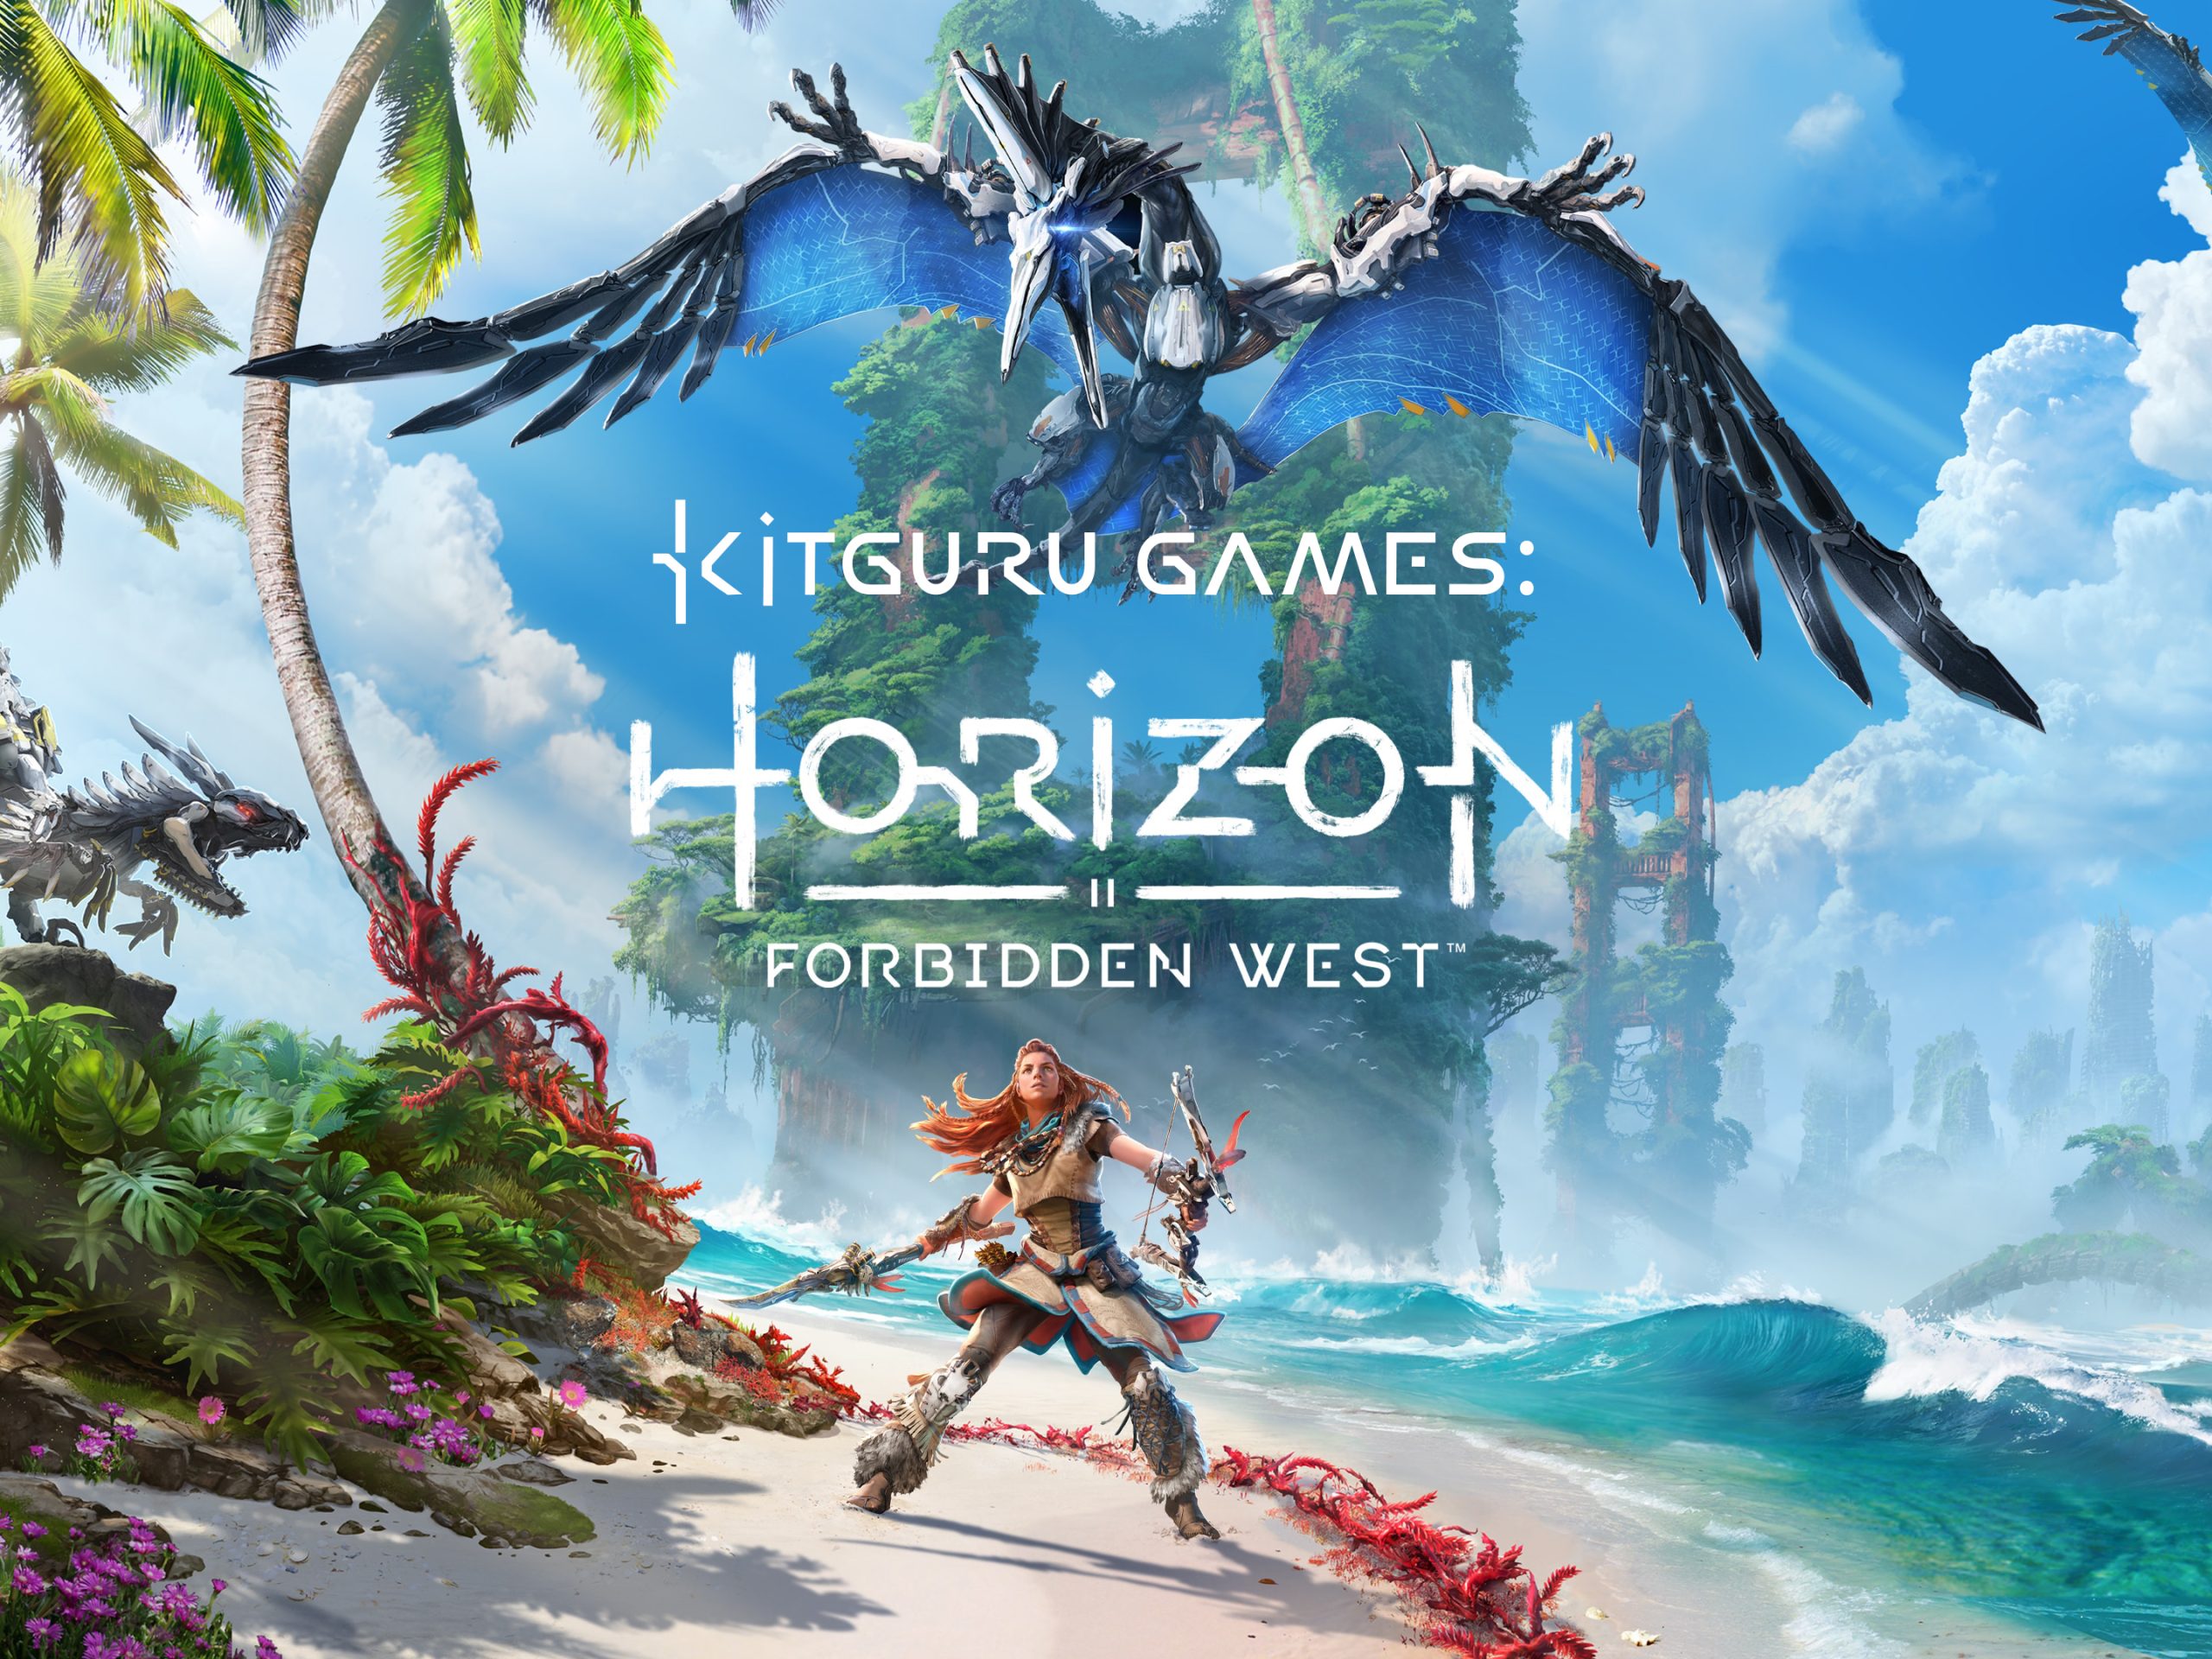 Horizon Zero Dawn - 1 Hour of AMAZING Gameplay (PS4) 2017 